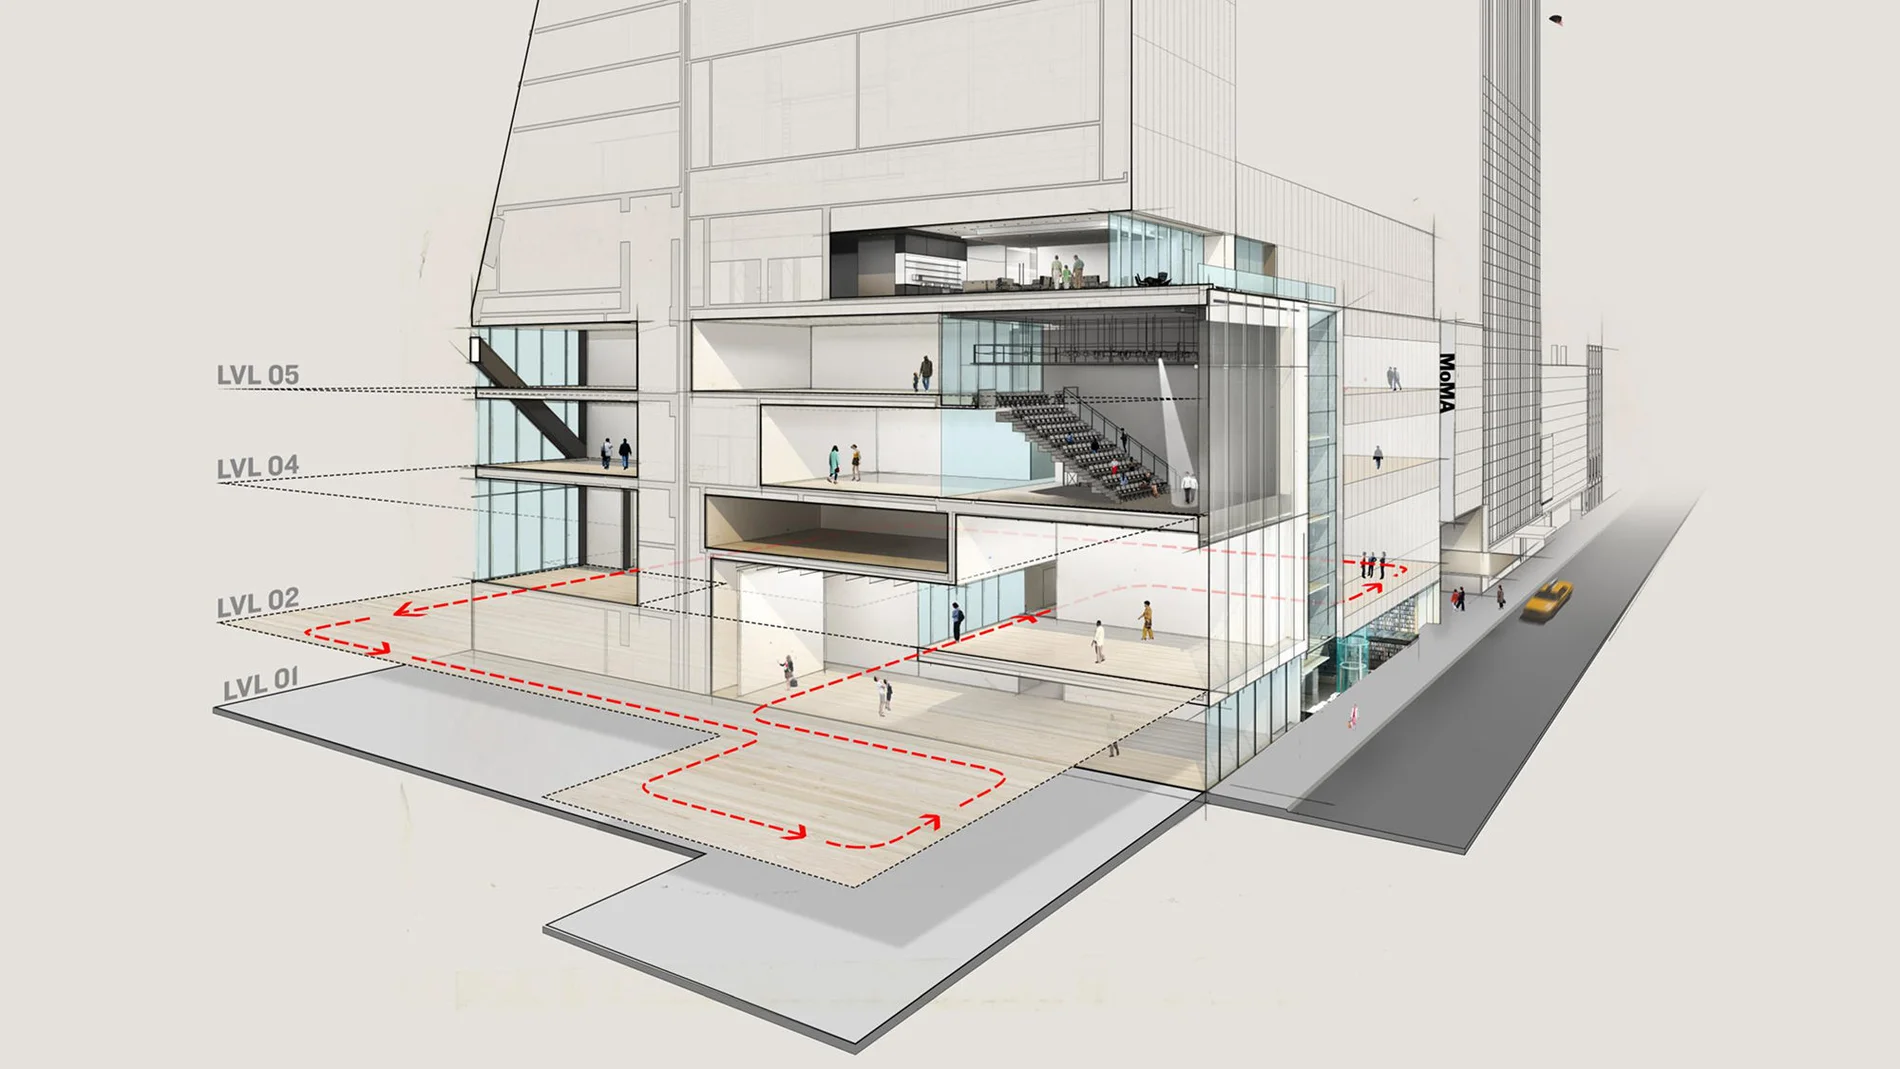 Imagen del MoMA desde su entrada en la calle 53 que muestra los planes de expandir las galerías del segundo, cuarto y quinto piso / © 2017 Diller Scofidio + Renfro